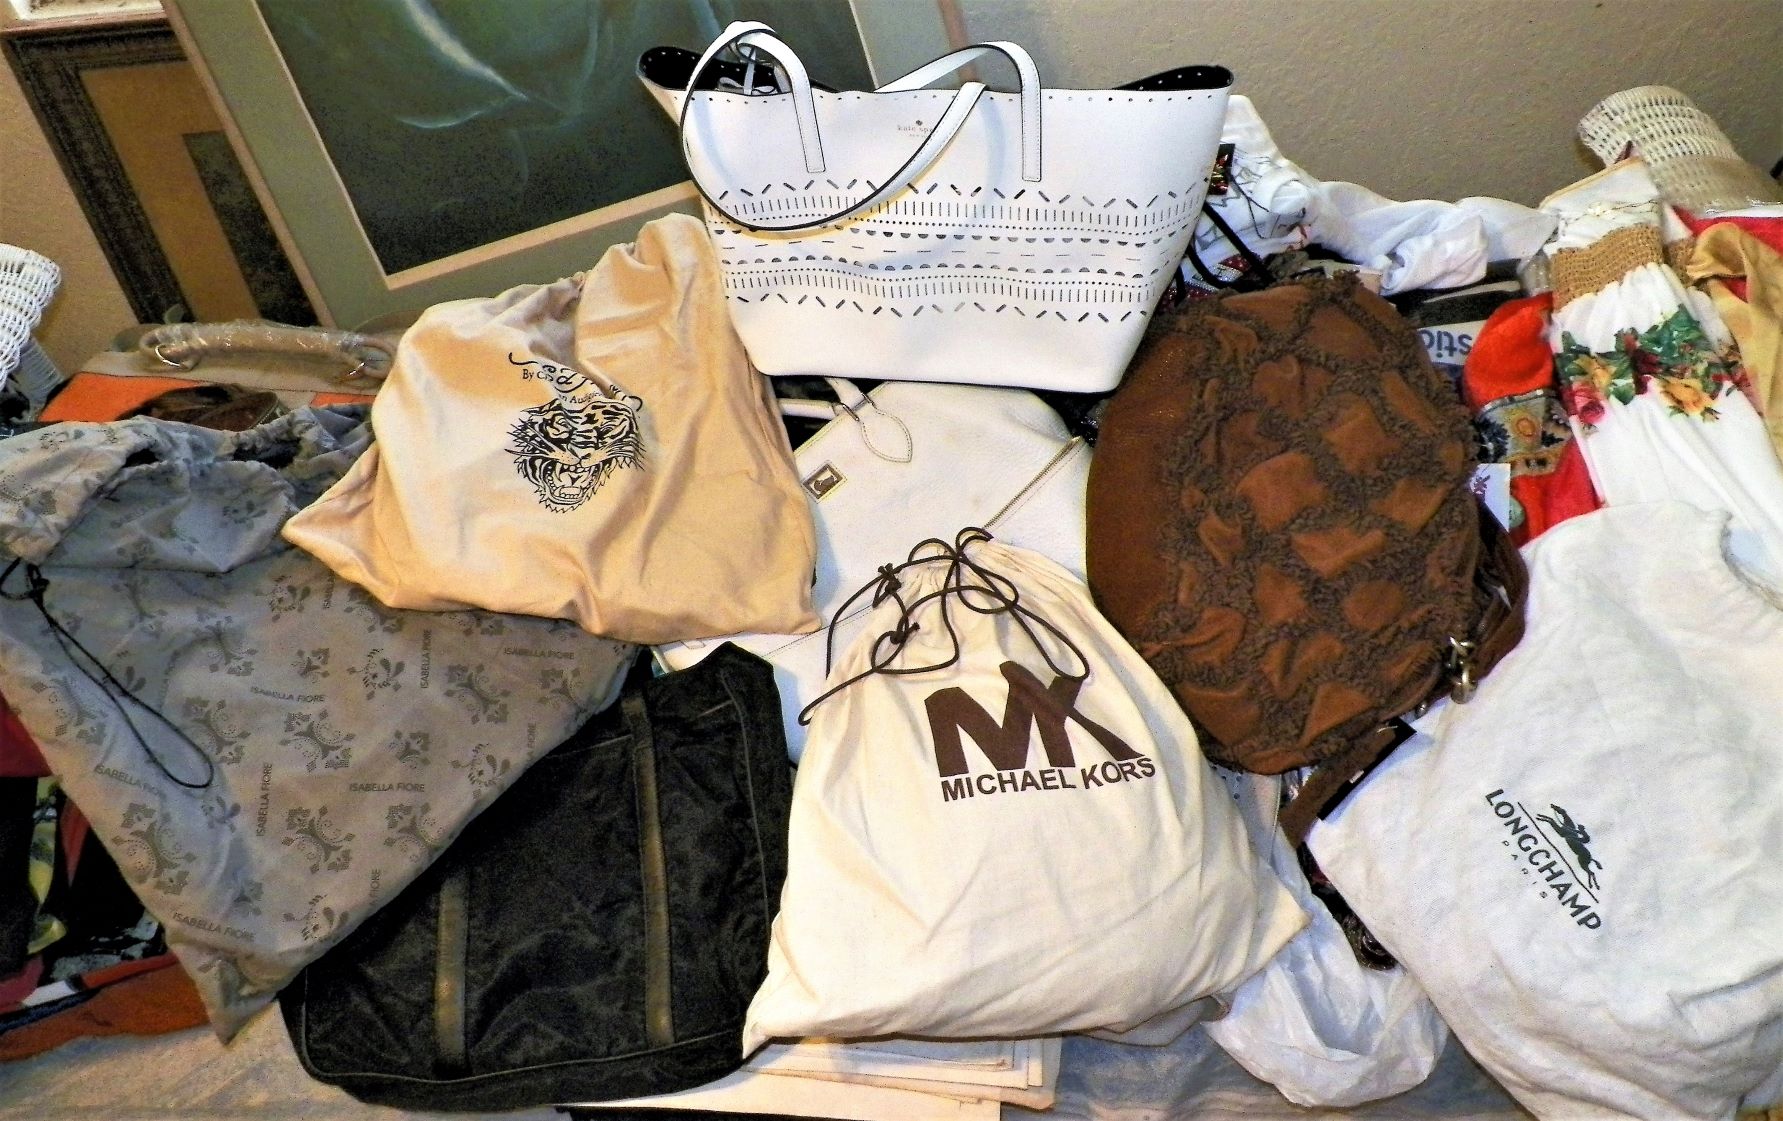 Handbag Comparison: Michael Kors and Louis Vuitton 